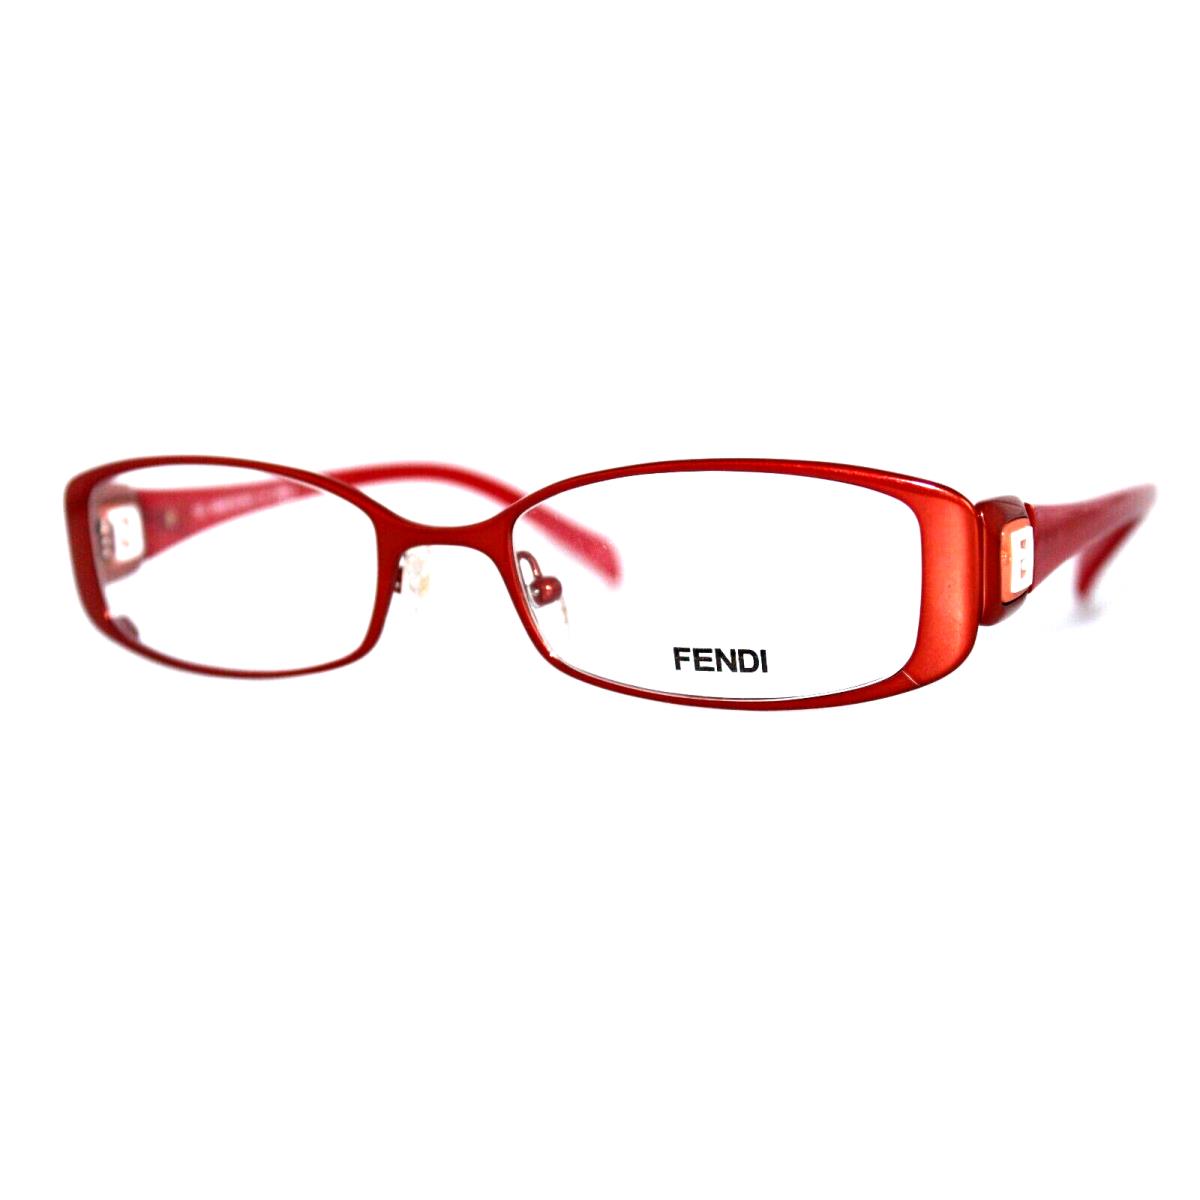 Fendi F901 222 Dark Orange Eyeglasses Frames 50-18-135MM W/case